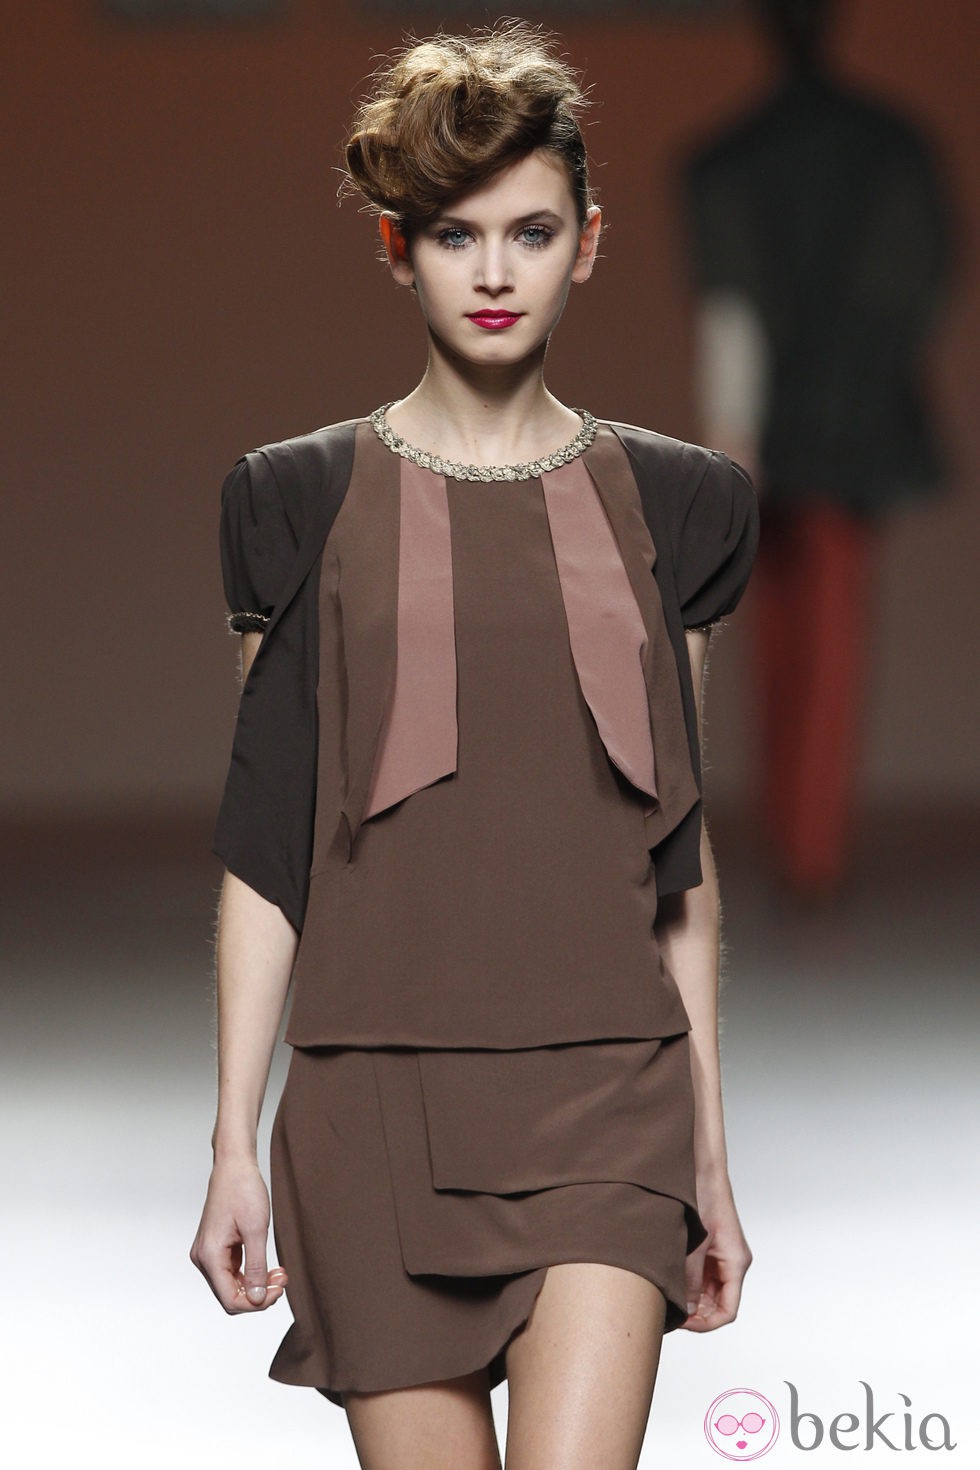 Diseño lady en marrón pastel de Kina Fernández en la Fashion Week Madrid